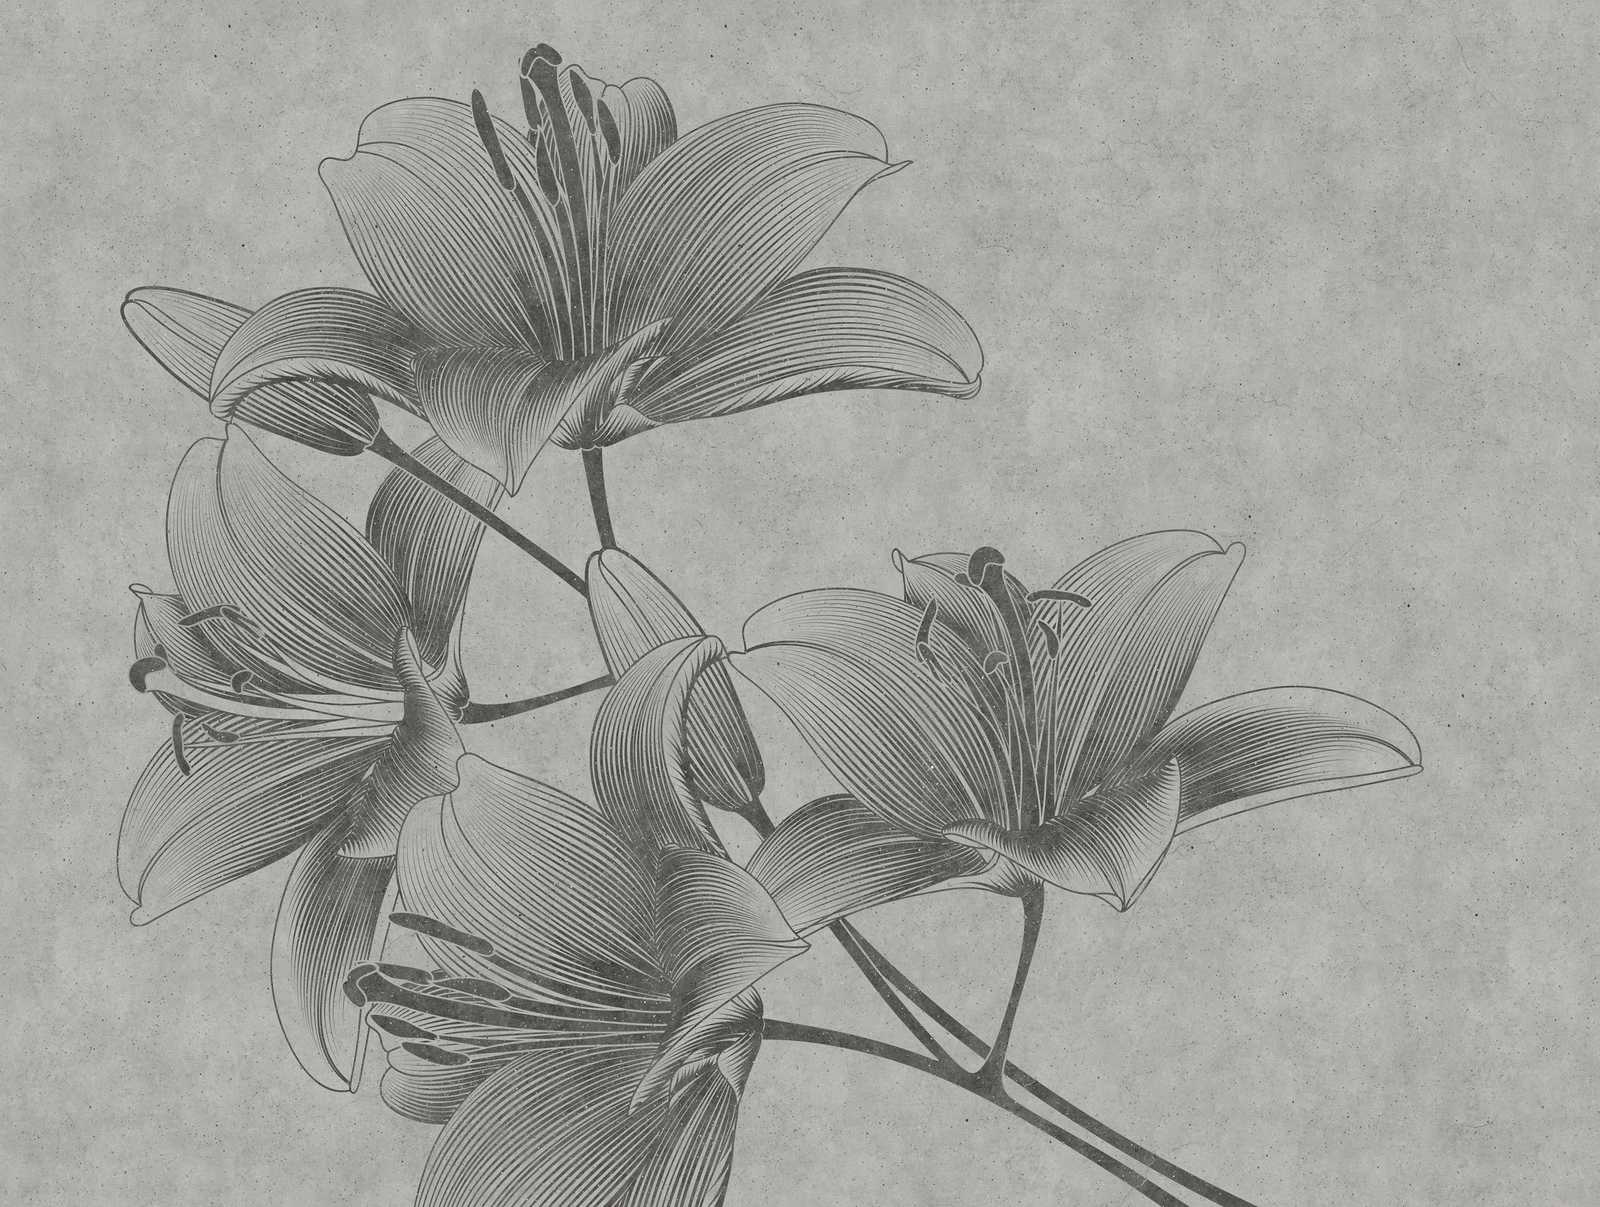             Papel pintado novedad | papel pintado floral gris lirios en estilo line art
        